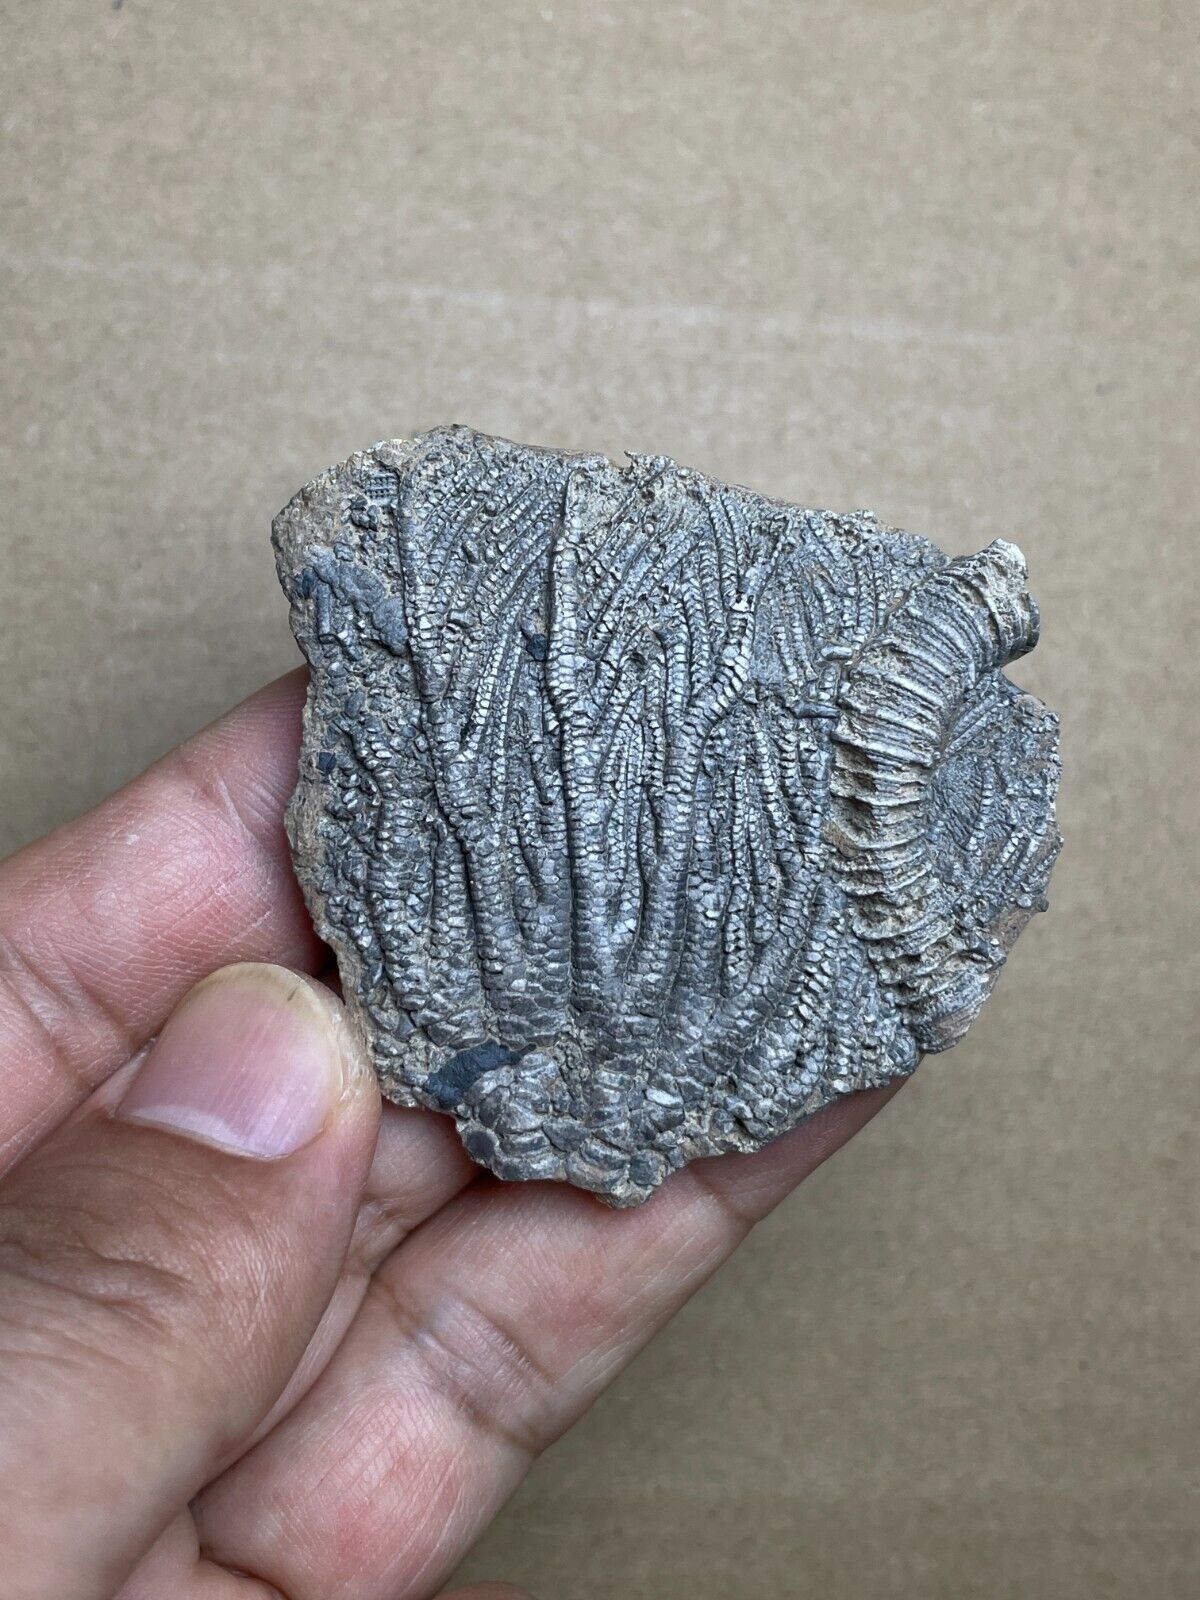 24g Triassic Natural crinoid specimen Geologic rock